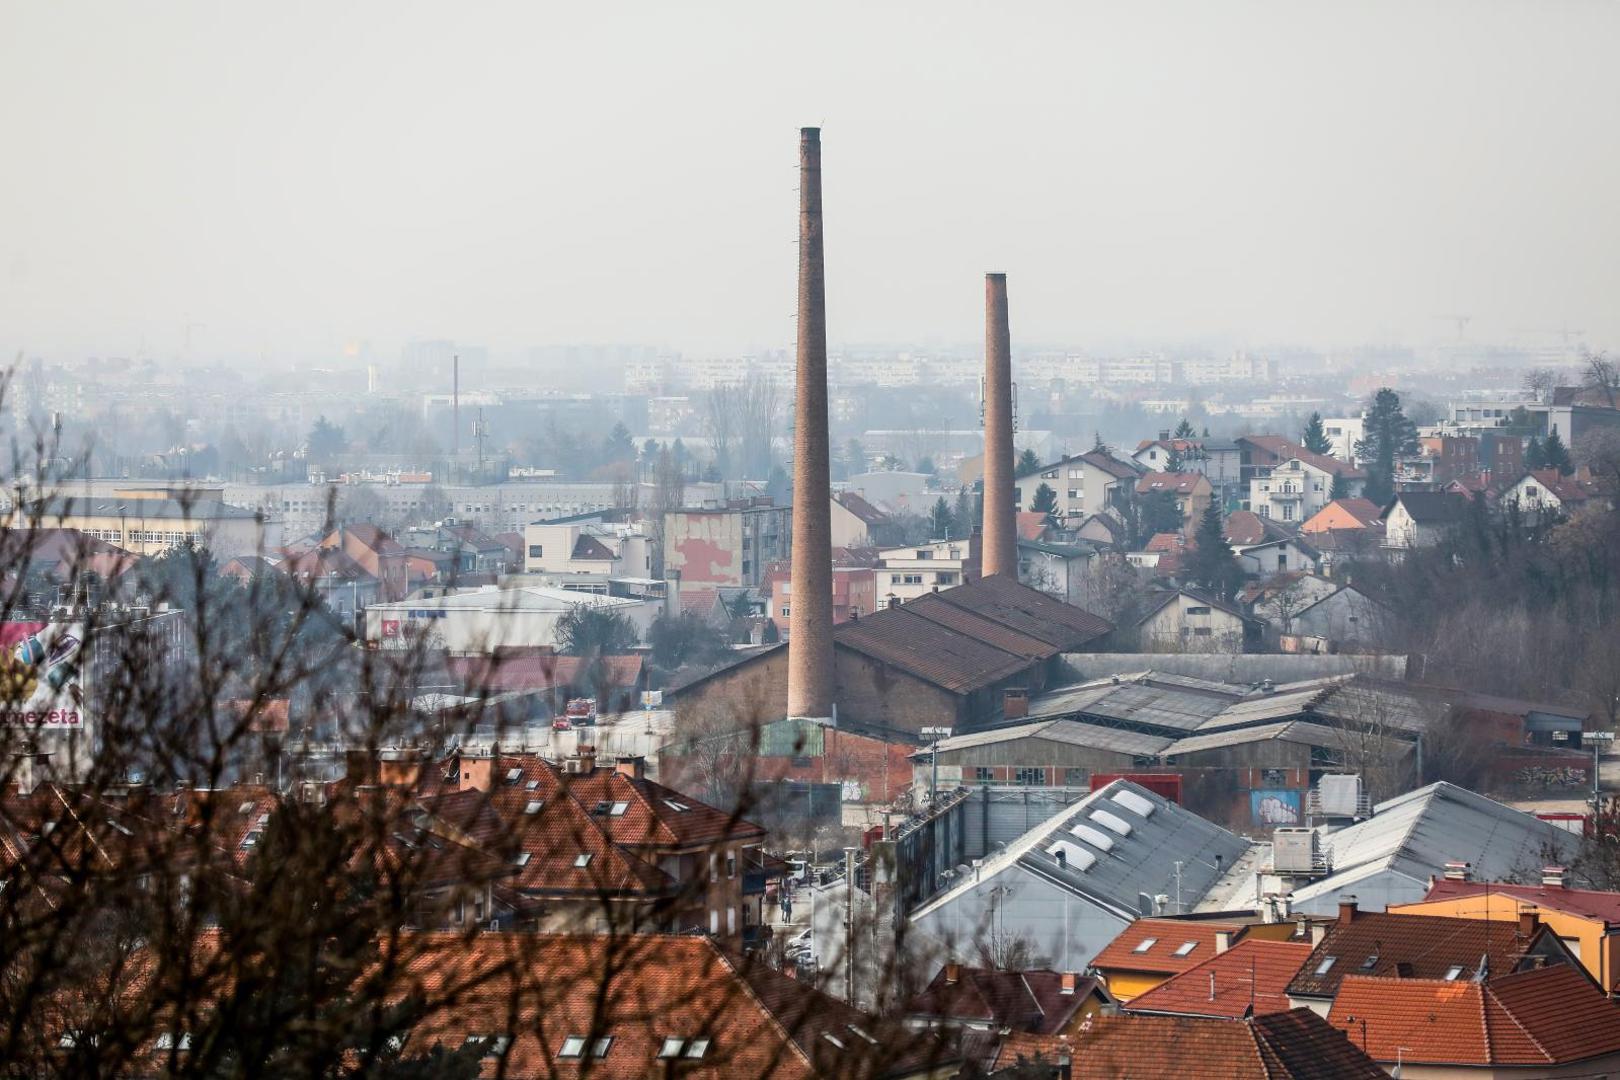 21..02.2021. Zagreb - Na lokaciji bivsih ciglana Zagreb, pored okretista tramvaja na Crnomercu nalazi se napusteni industrijski kompleks sa dva dimnjaka. Dimnjaci se nalaze na istocnom i zapadnom dijelu glavne zgrade s pecima za ciglu. Visina zapadnog dimnjaka je 49.8 m dok je visina istocnog dimnjaka 62.2 m. Uslijed potresa 22. ozujka i 29. prosinca 2020. dimnjaci su osteceni. Zbog ostecenja narusena im je stabilnoste te predstavljaju opasnost od djelomicnog ili cjelovitog rusenja zbog cega ce izvesti kontrolirano rusenje.

Photo:Emica Elvedji/PIXSELL